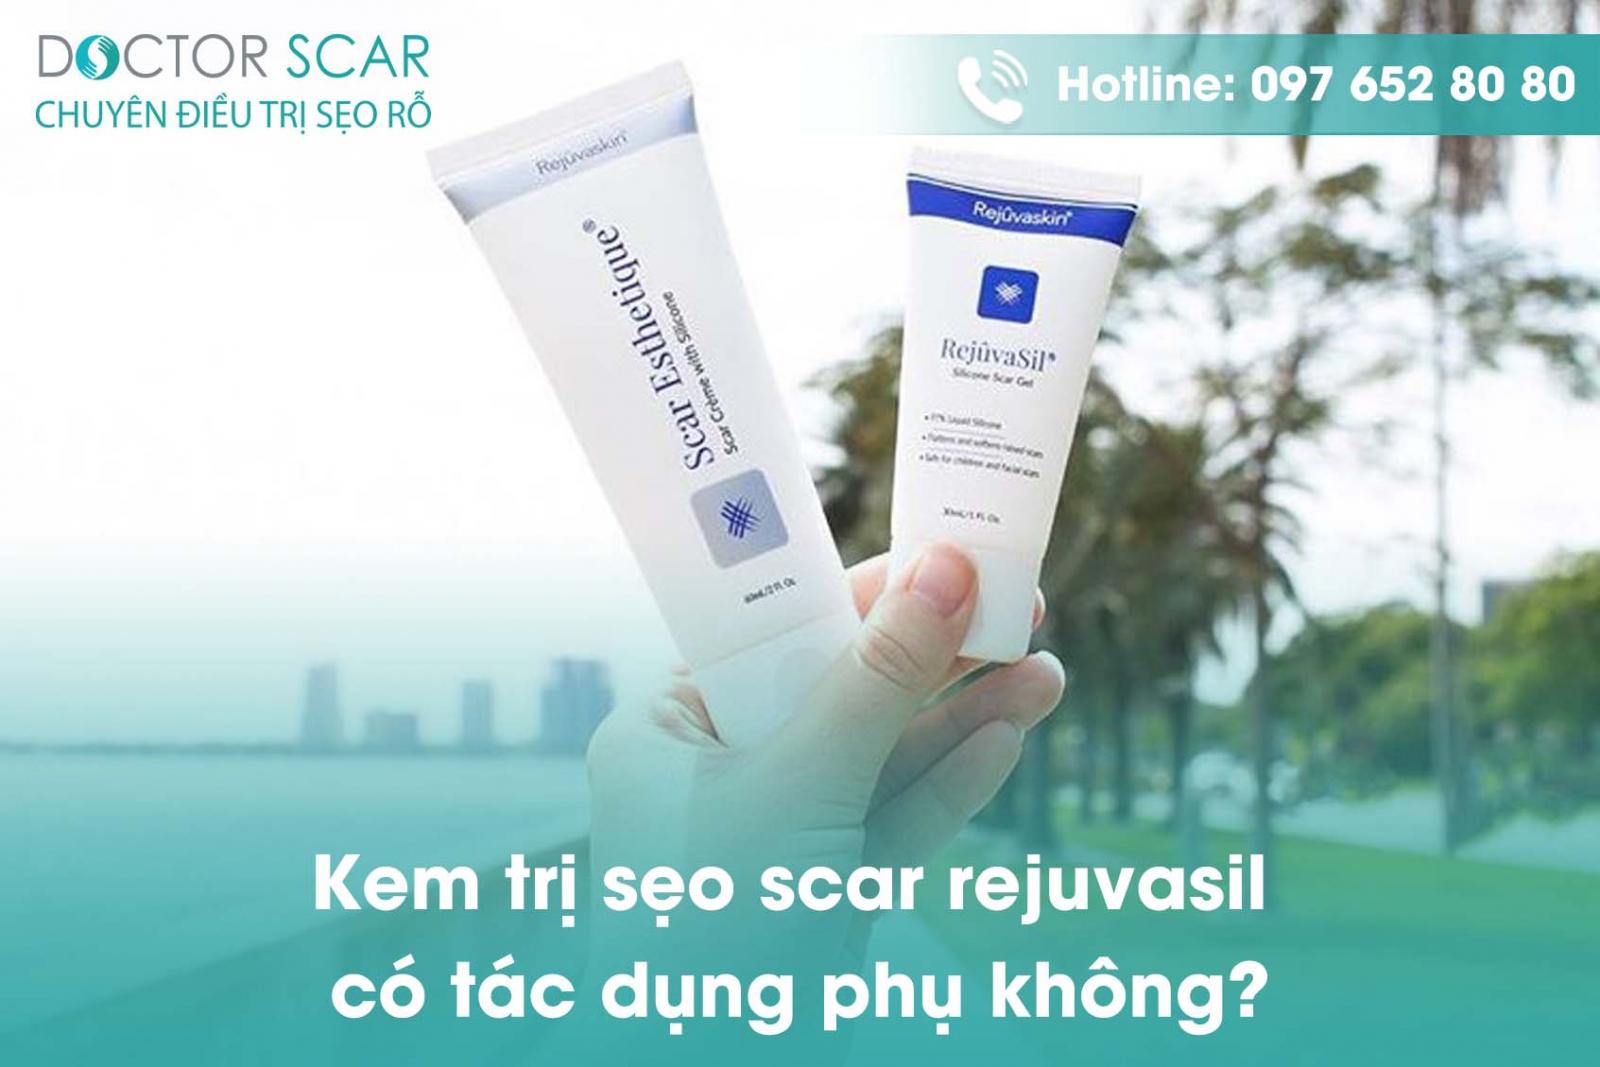 Kem trị sẹo scar rejuvasil có tác dụng phụ không?